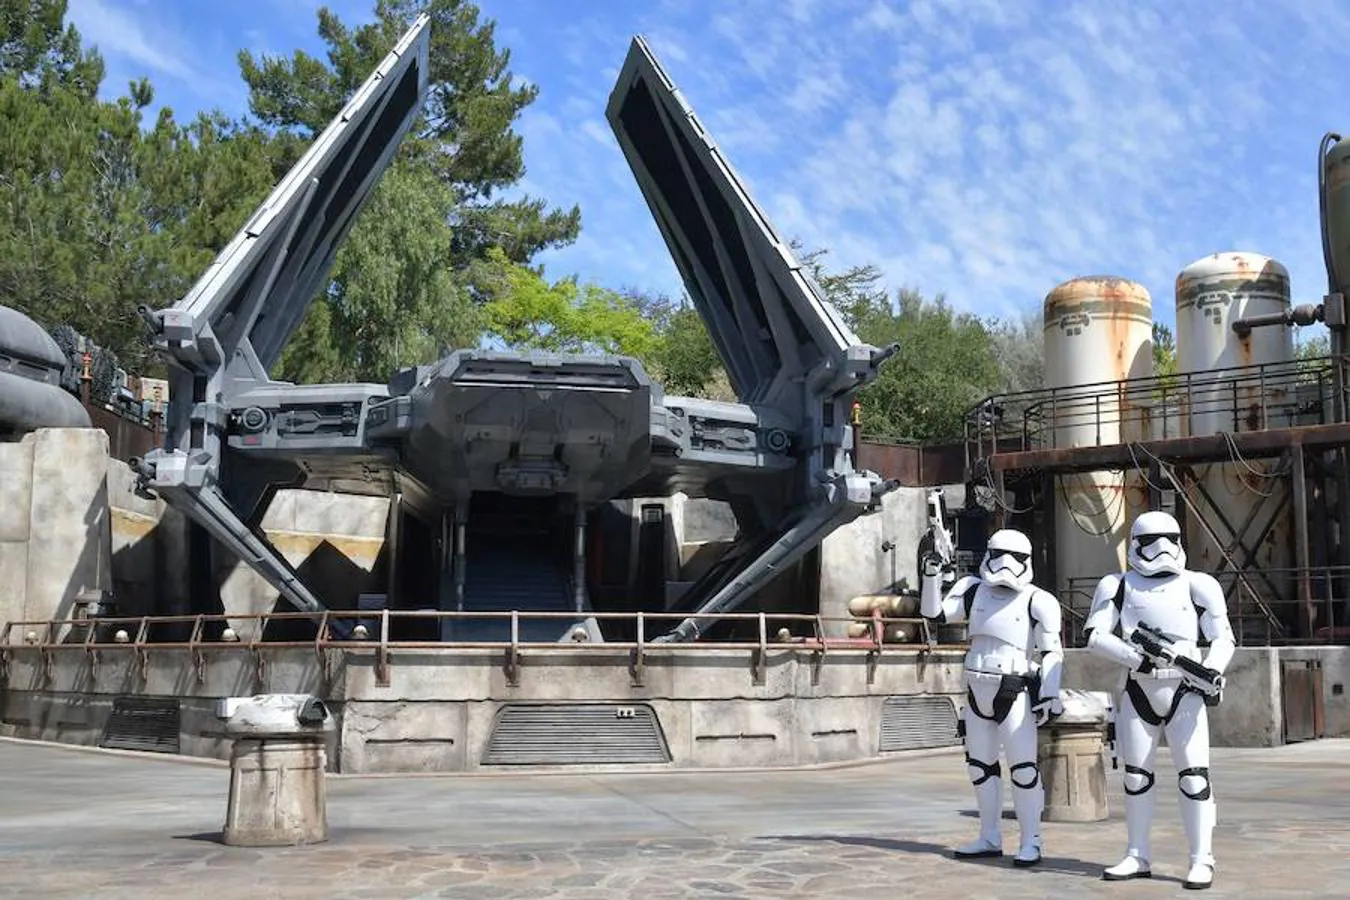 Disney inaugura este viernes 31 de mayo un parque temático sobre la saga 'Star Wars'. La principal atracción será volar en el 'Halcón Milenario'. La idea de este parque construido sobre cinco hectáreas de terreno es que el cliente sienta que durante unas horas está dentro de una de estas películas de culto.